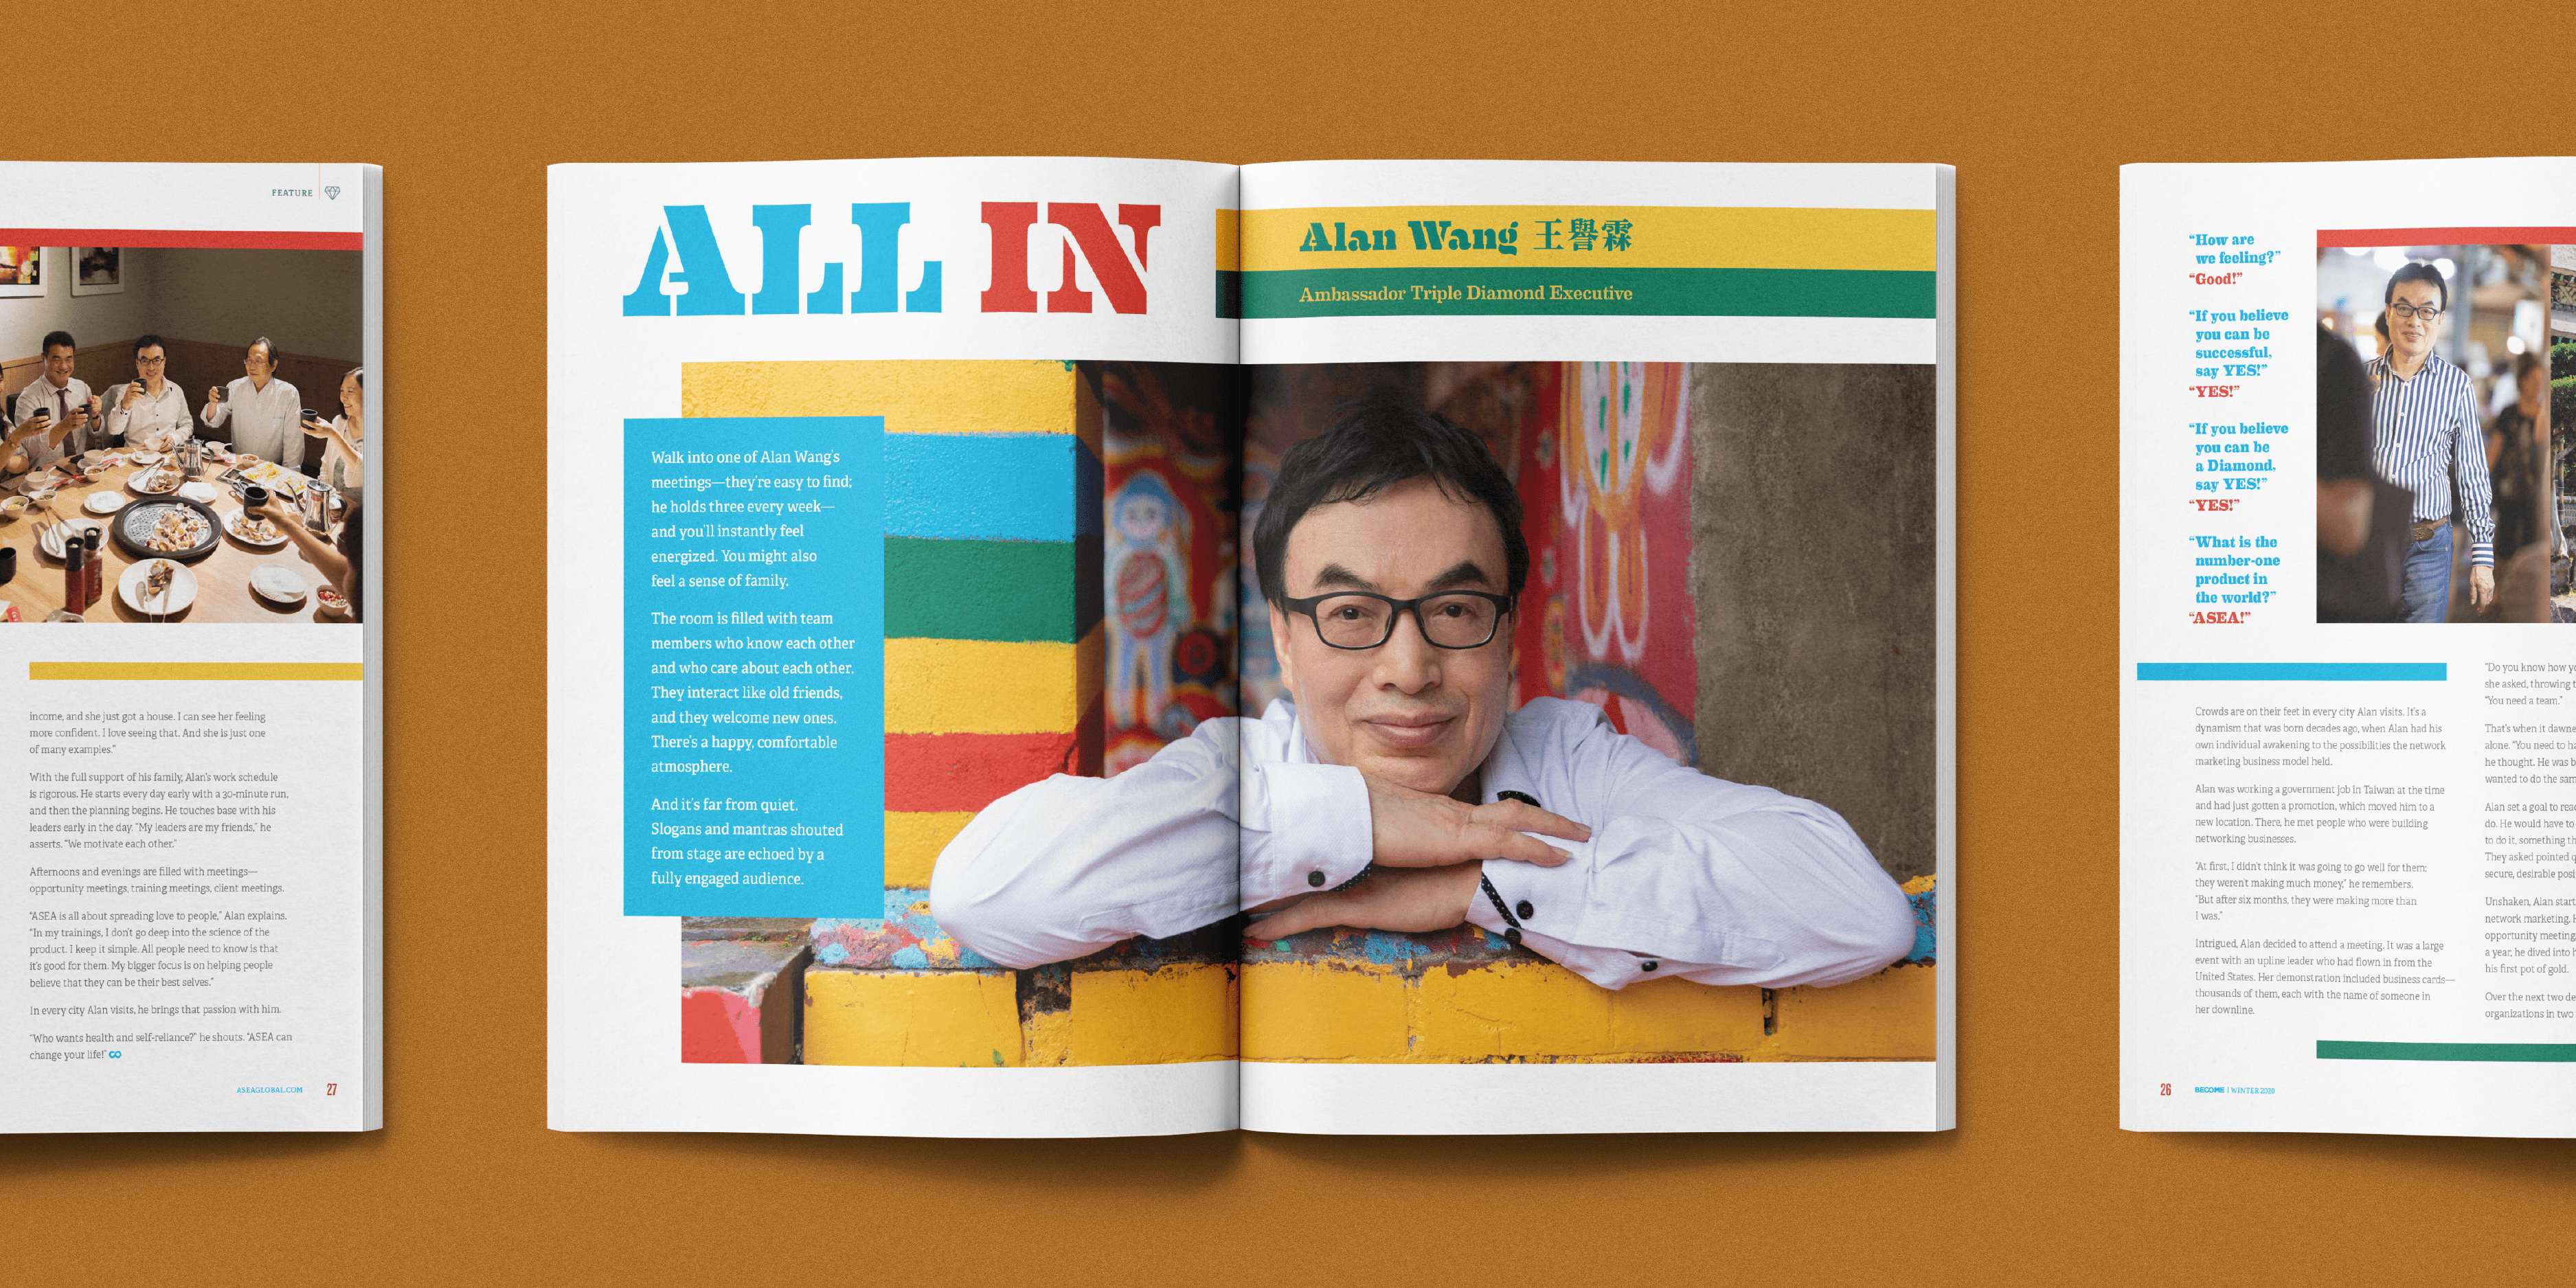 Become-Magazine-Alan-Wang-1